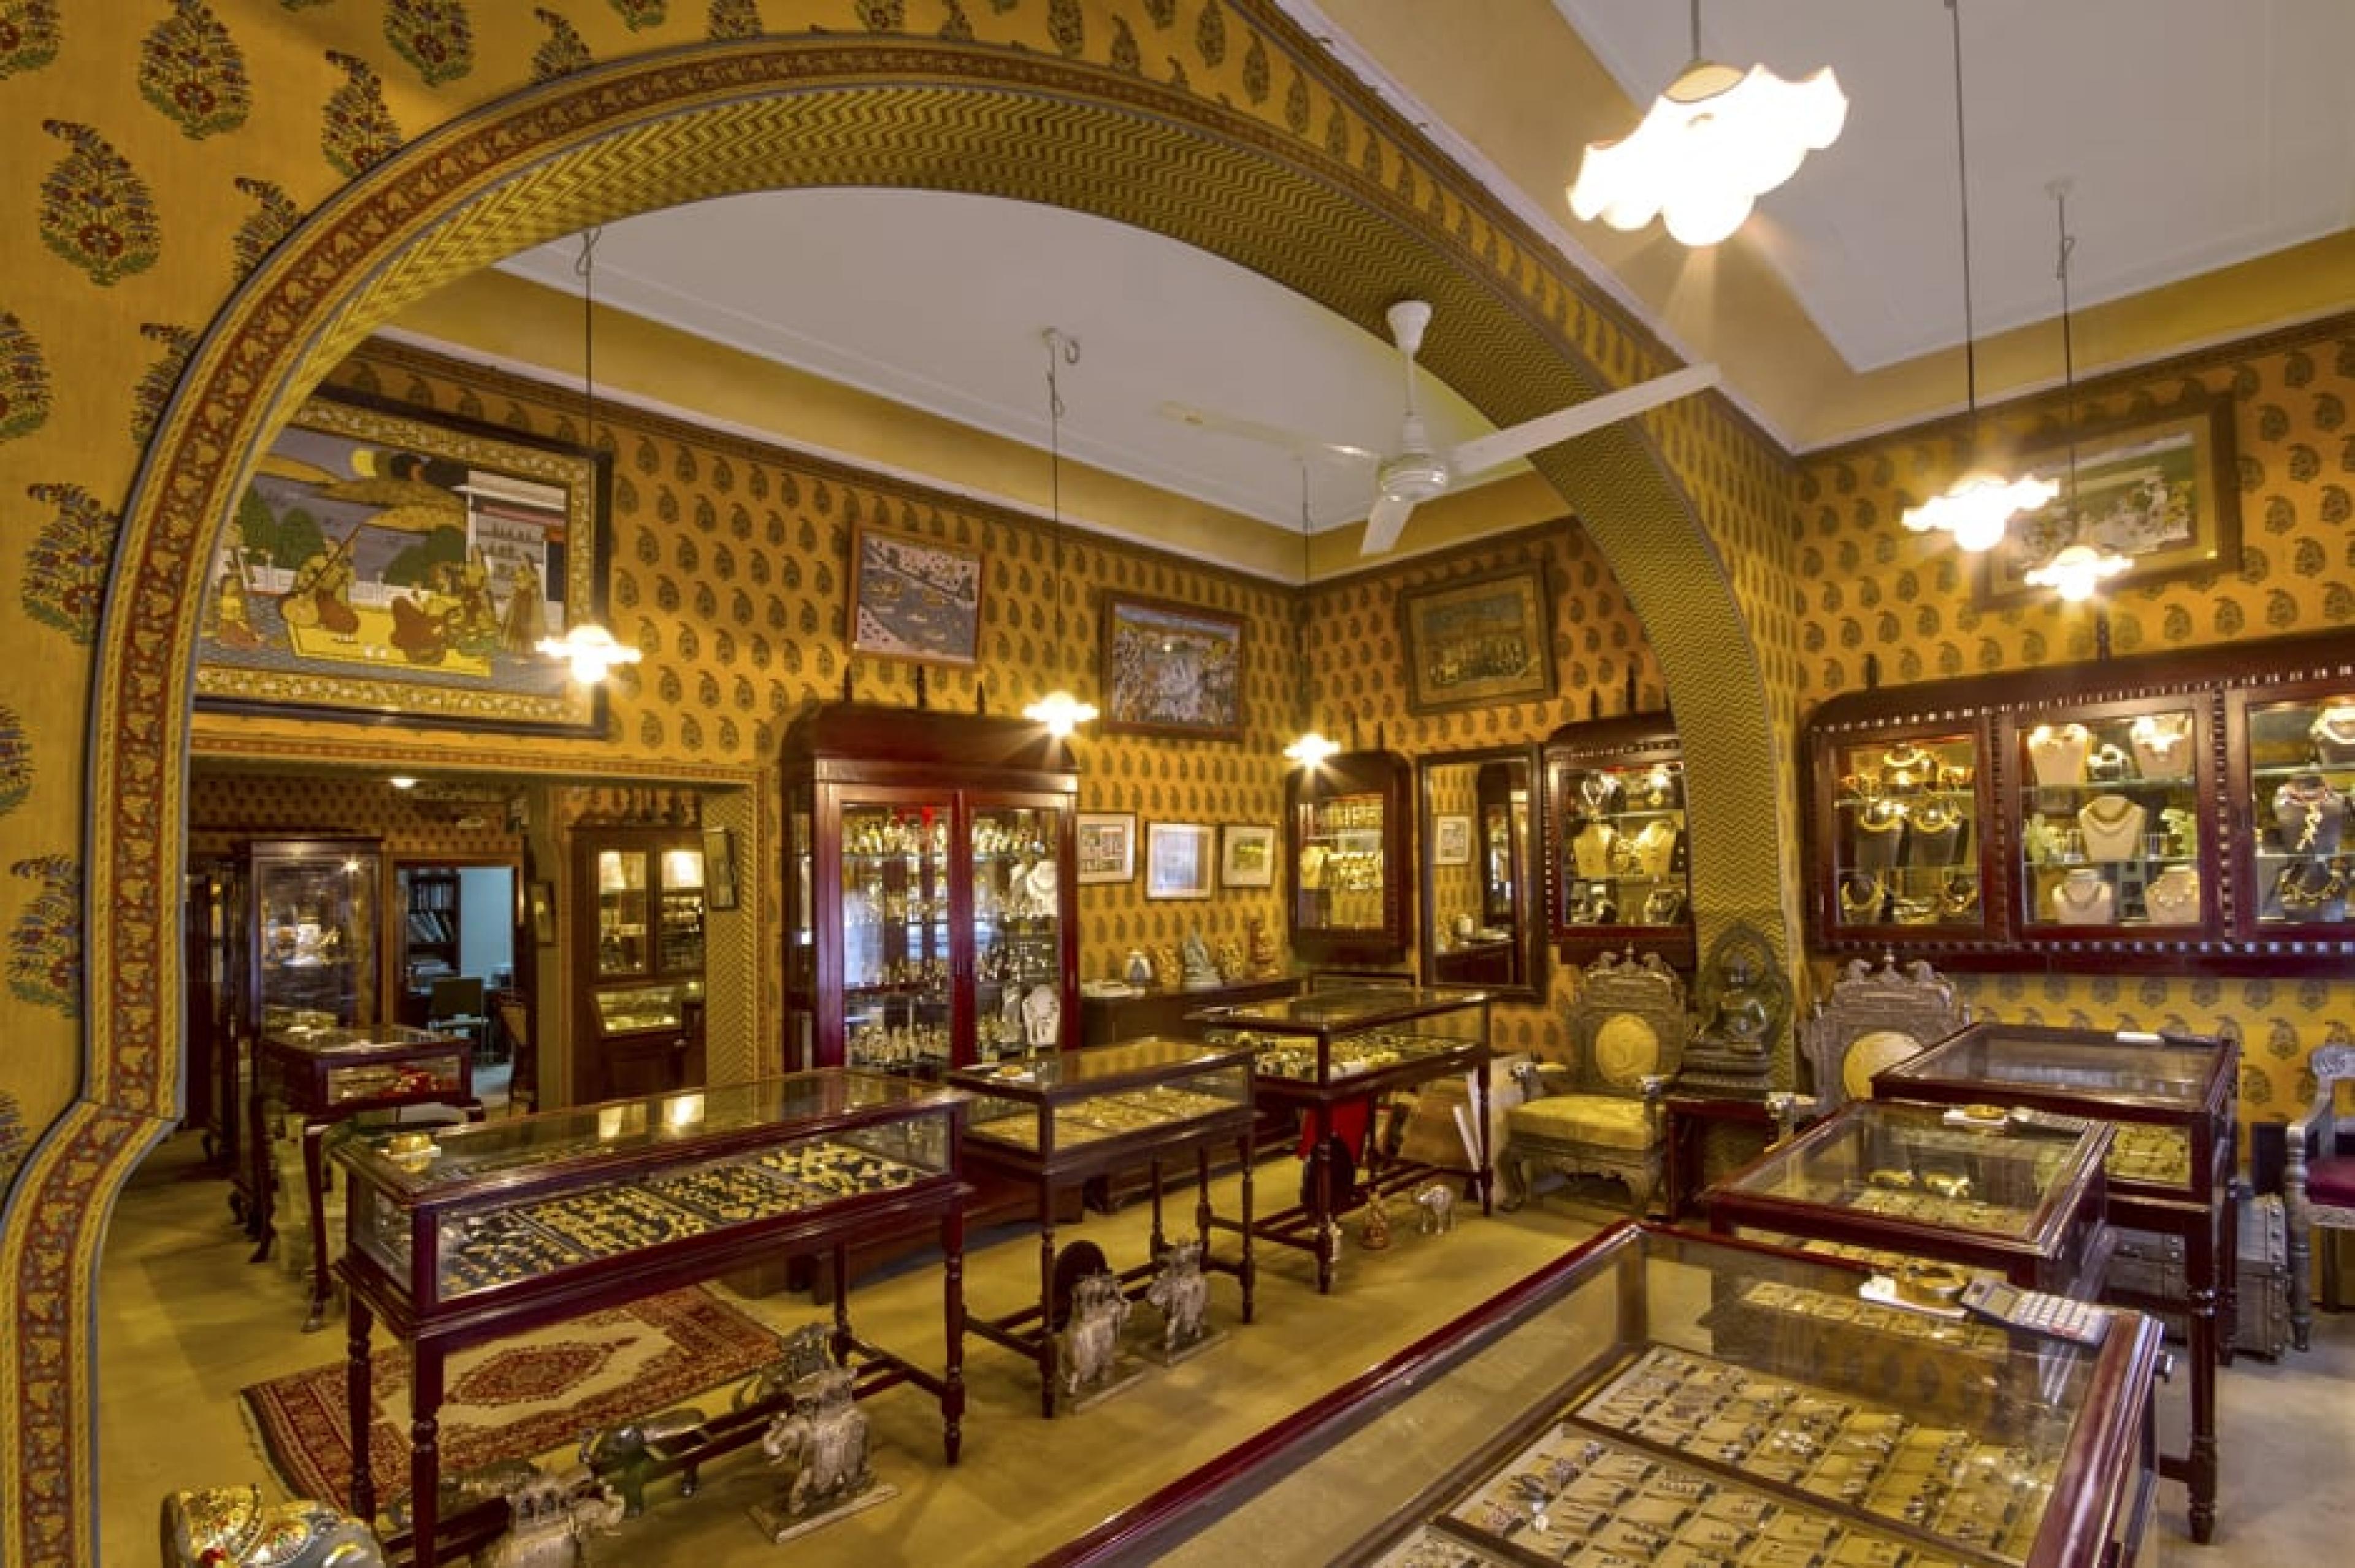 Interior at Gem Palace, Jaipur, India